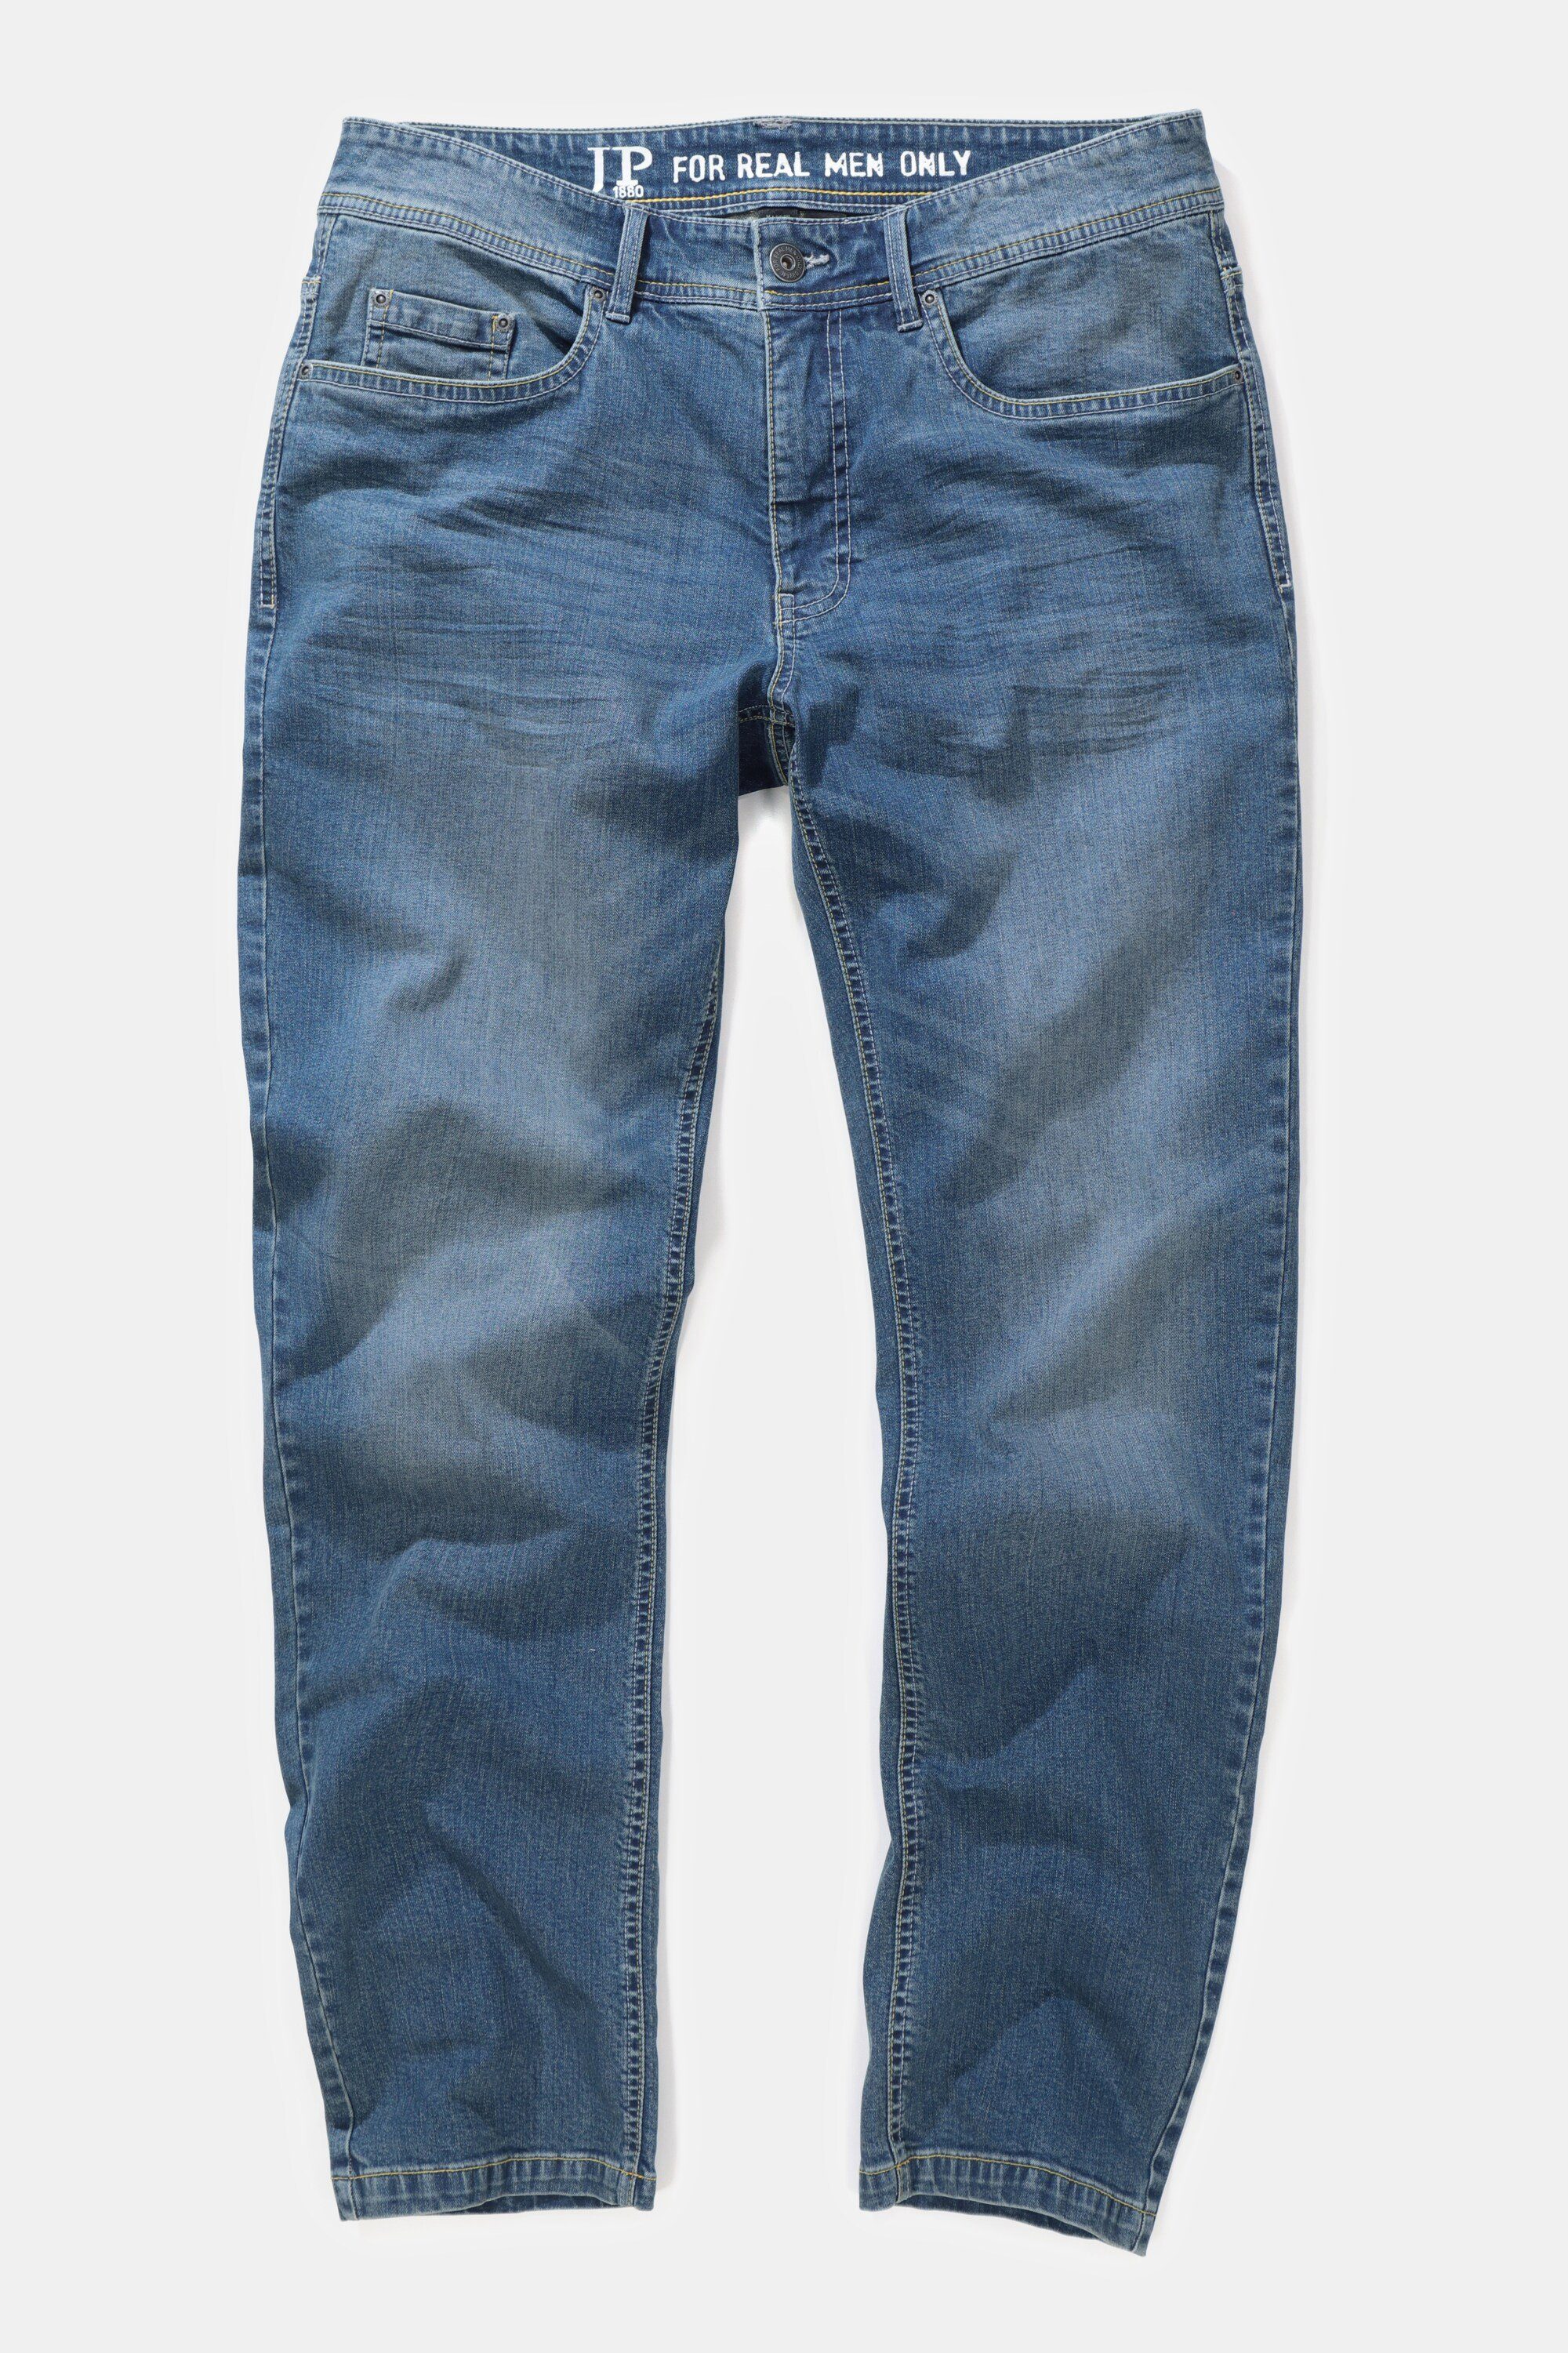 JP1880 5-Pocket-Jeans Jeans FLEXNAMIC® Fit denim bis blue Straight 72/36 Gr